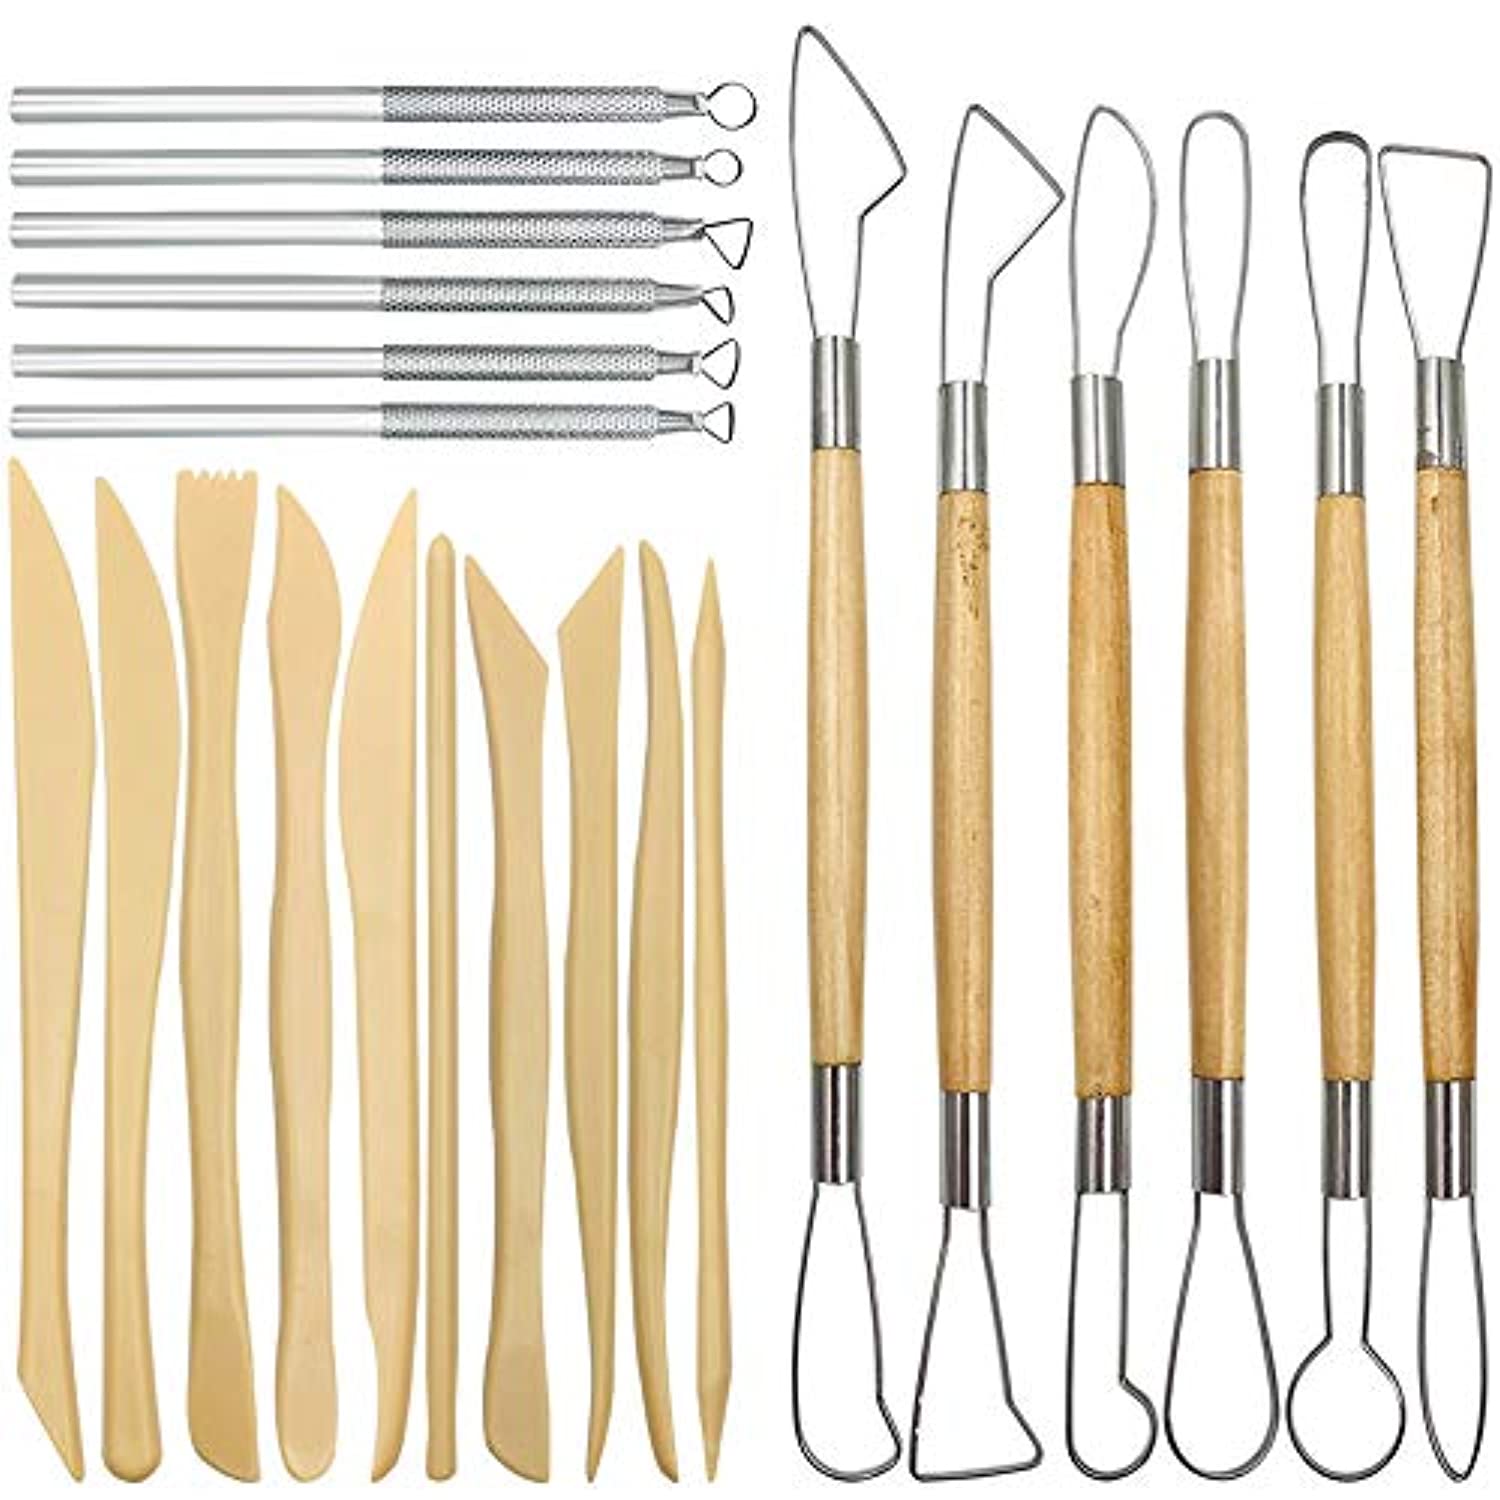  LOKUNN Kit de herramientas de arcilla, 30 herramientas de  arcilla polimérica, kits de herramientas de escultura de arcilla de  cerámica, herramientas básicas de tallado de cerámica de madera, kit de  suministros